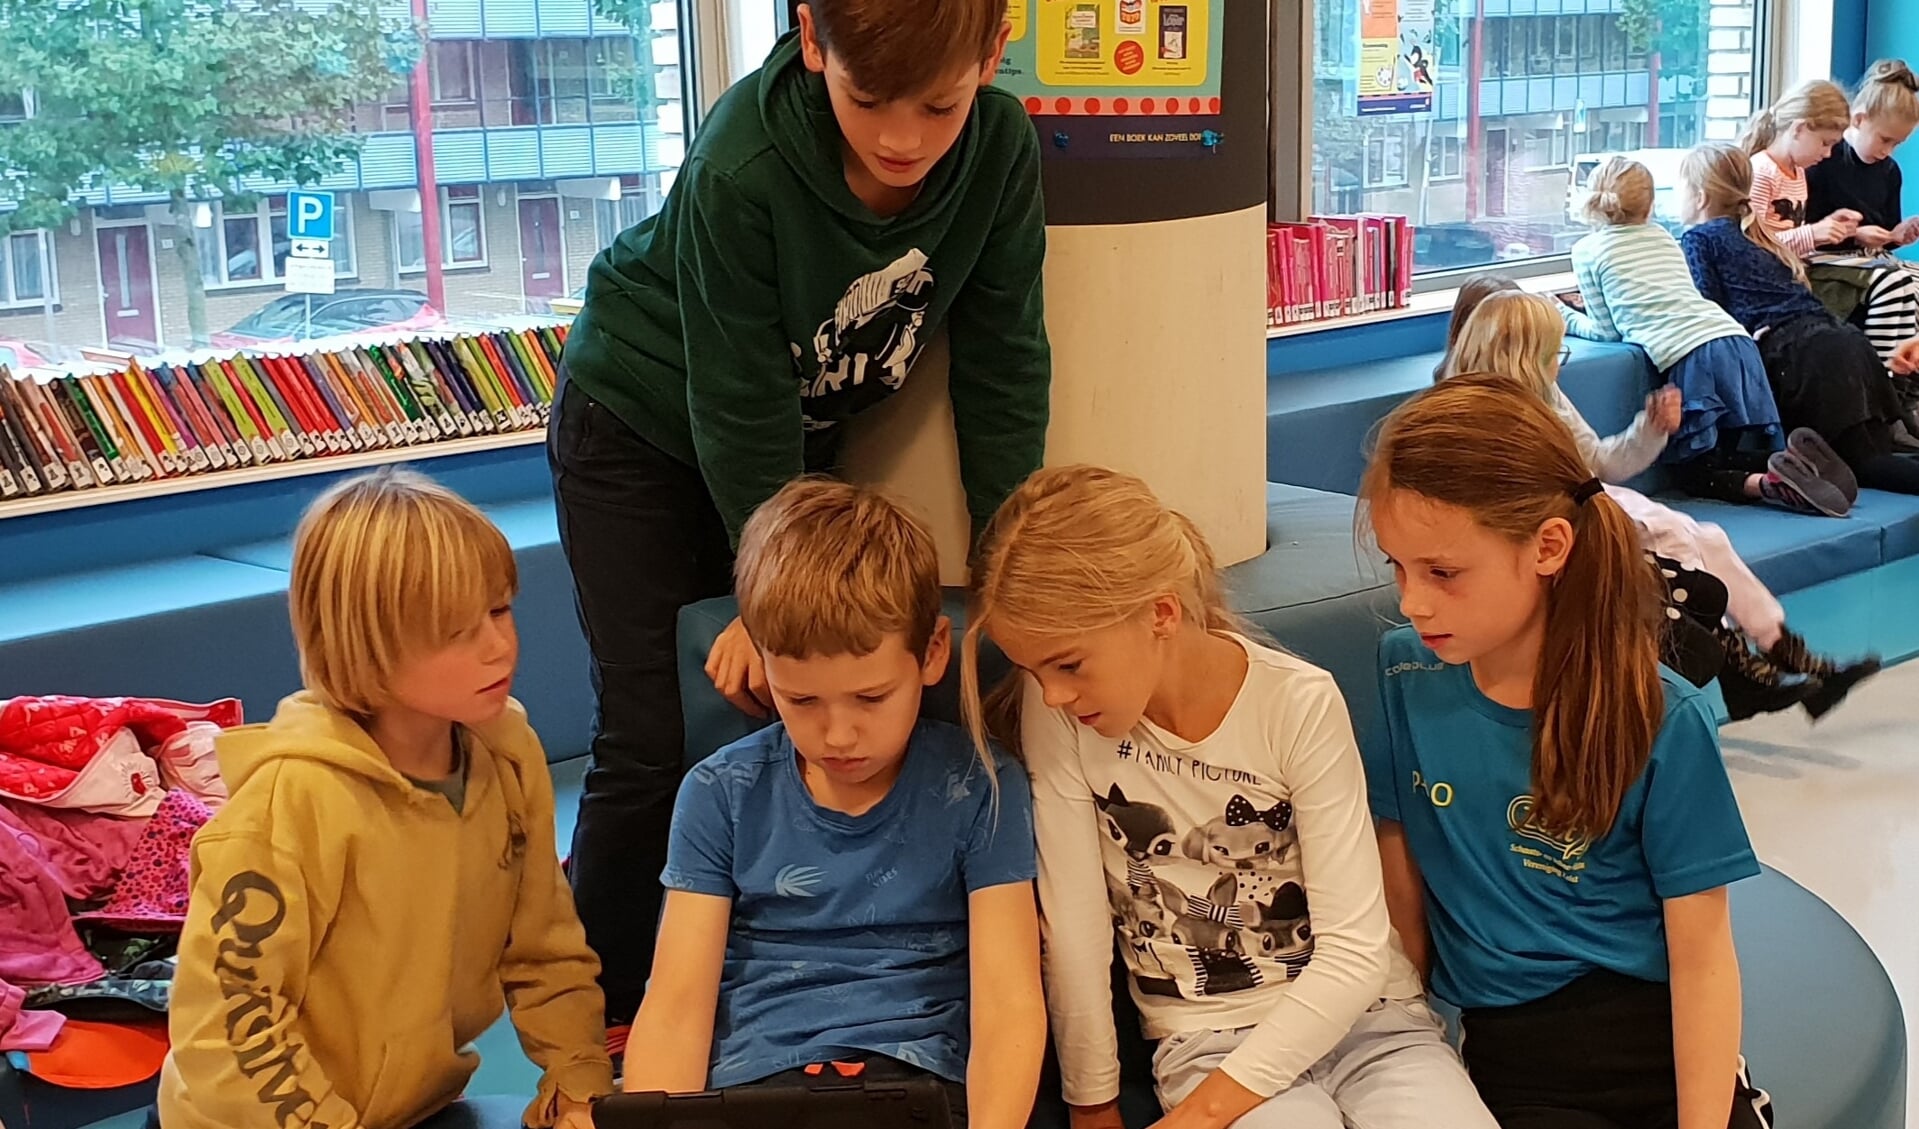 De leerlingen van groep 5/6 van de basisschool De Werkplaats ging op maandag 28 september naar de Bilthovense Bibliotheek.